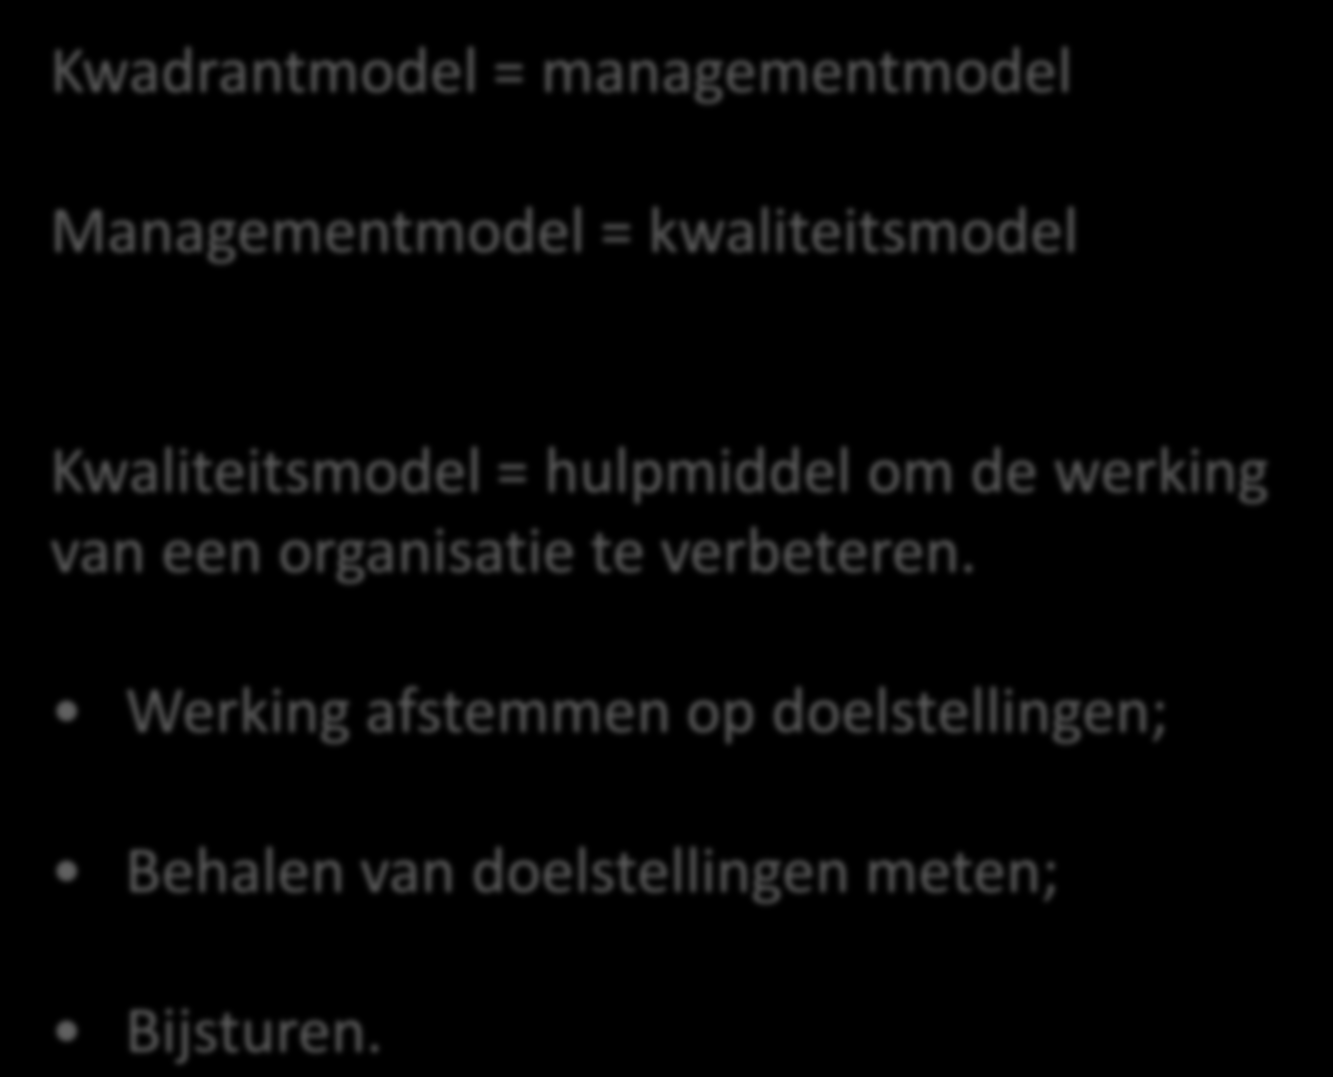 Kwadrantmodel = managementmodel Managementmodel = kwaliteitsmodel Kwaliteitsmodel = hulpmiddel om de werking van